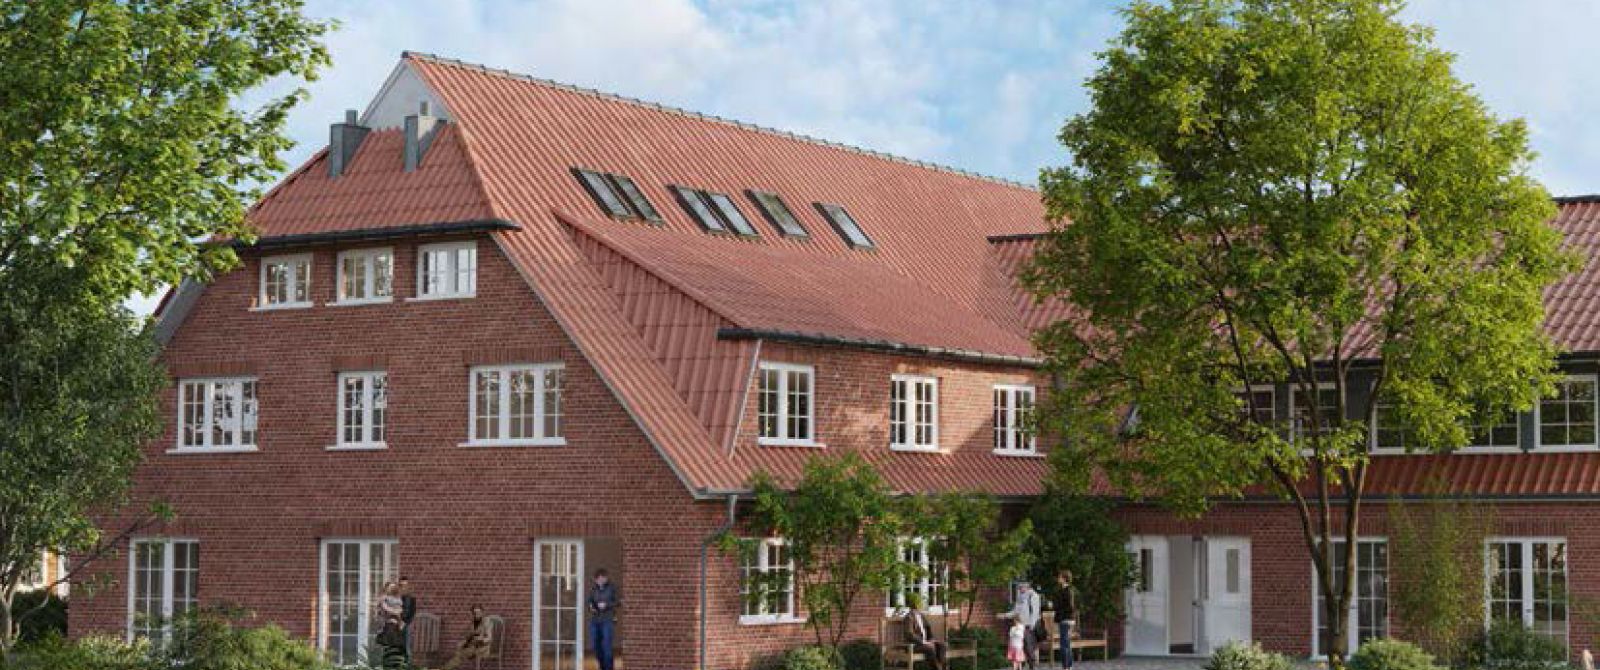 Pflegezentrum Kirchgellersen, Großraum Lüneburg